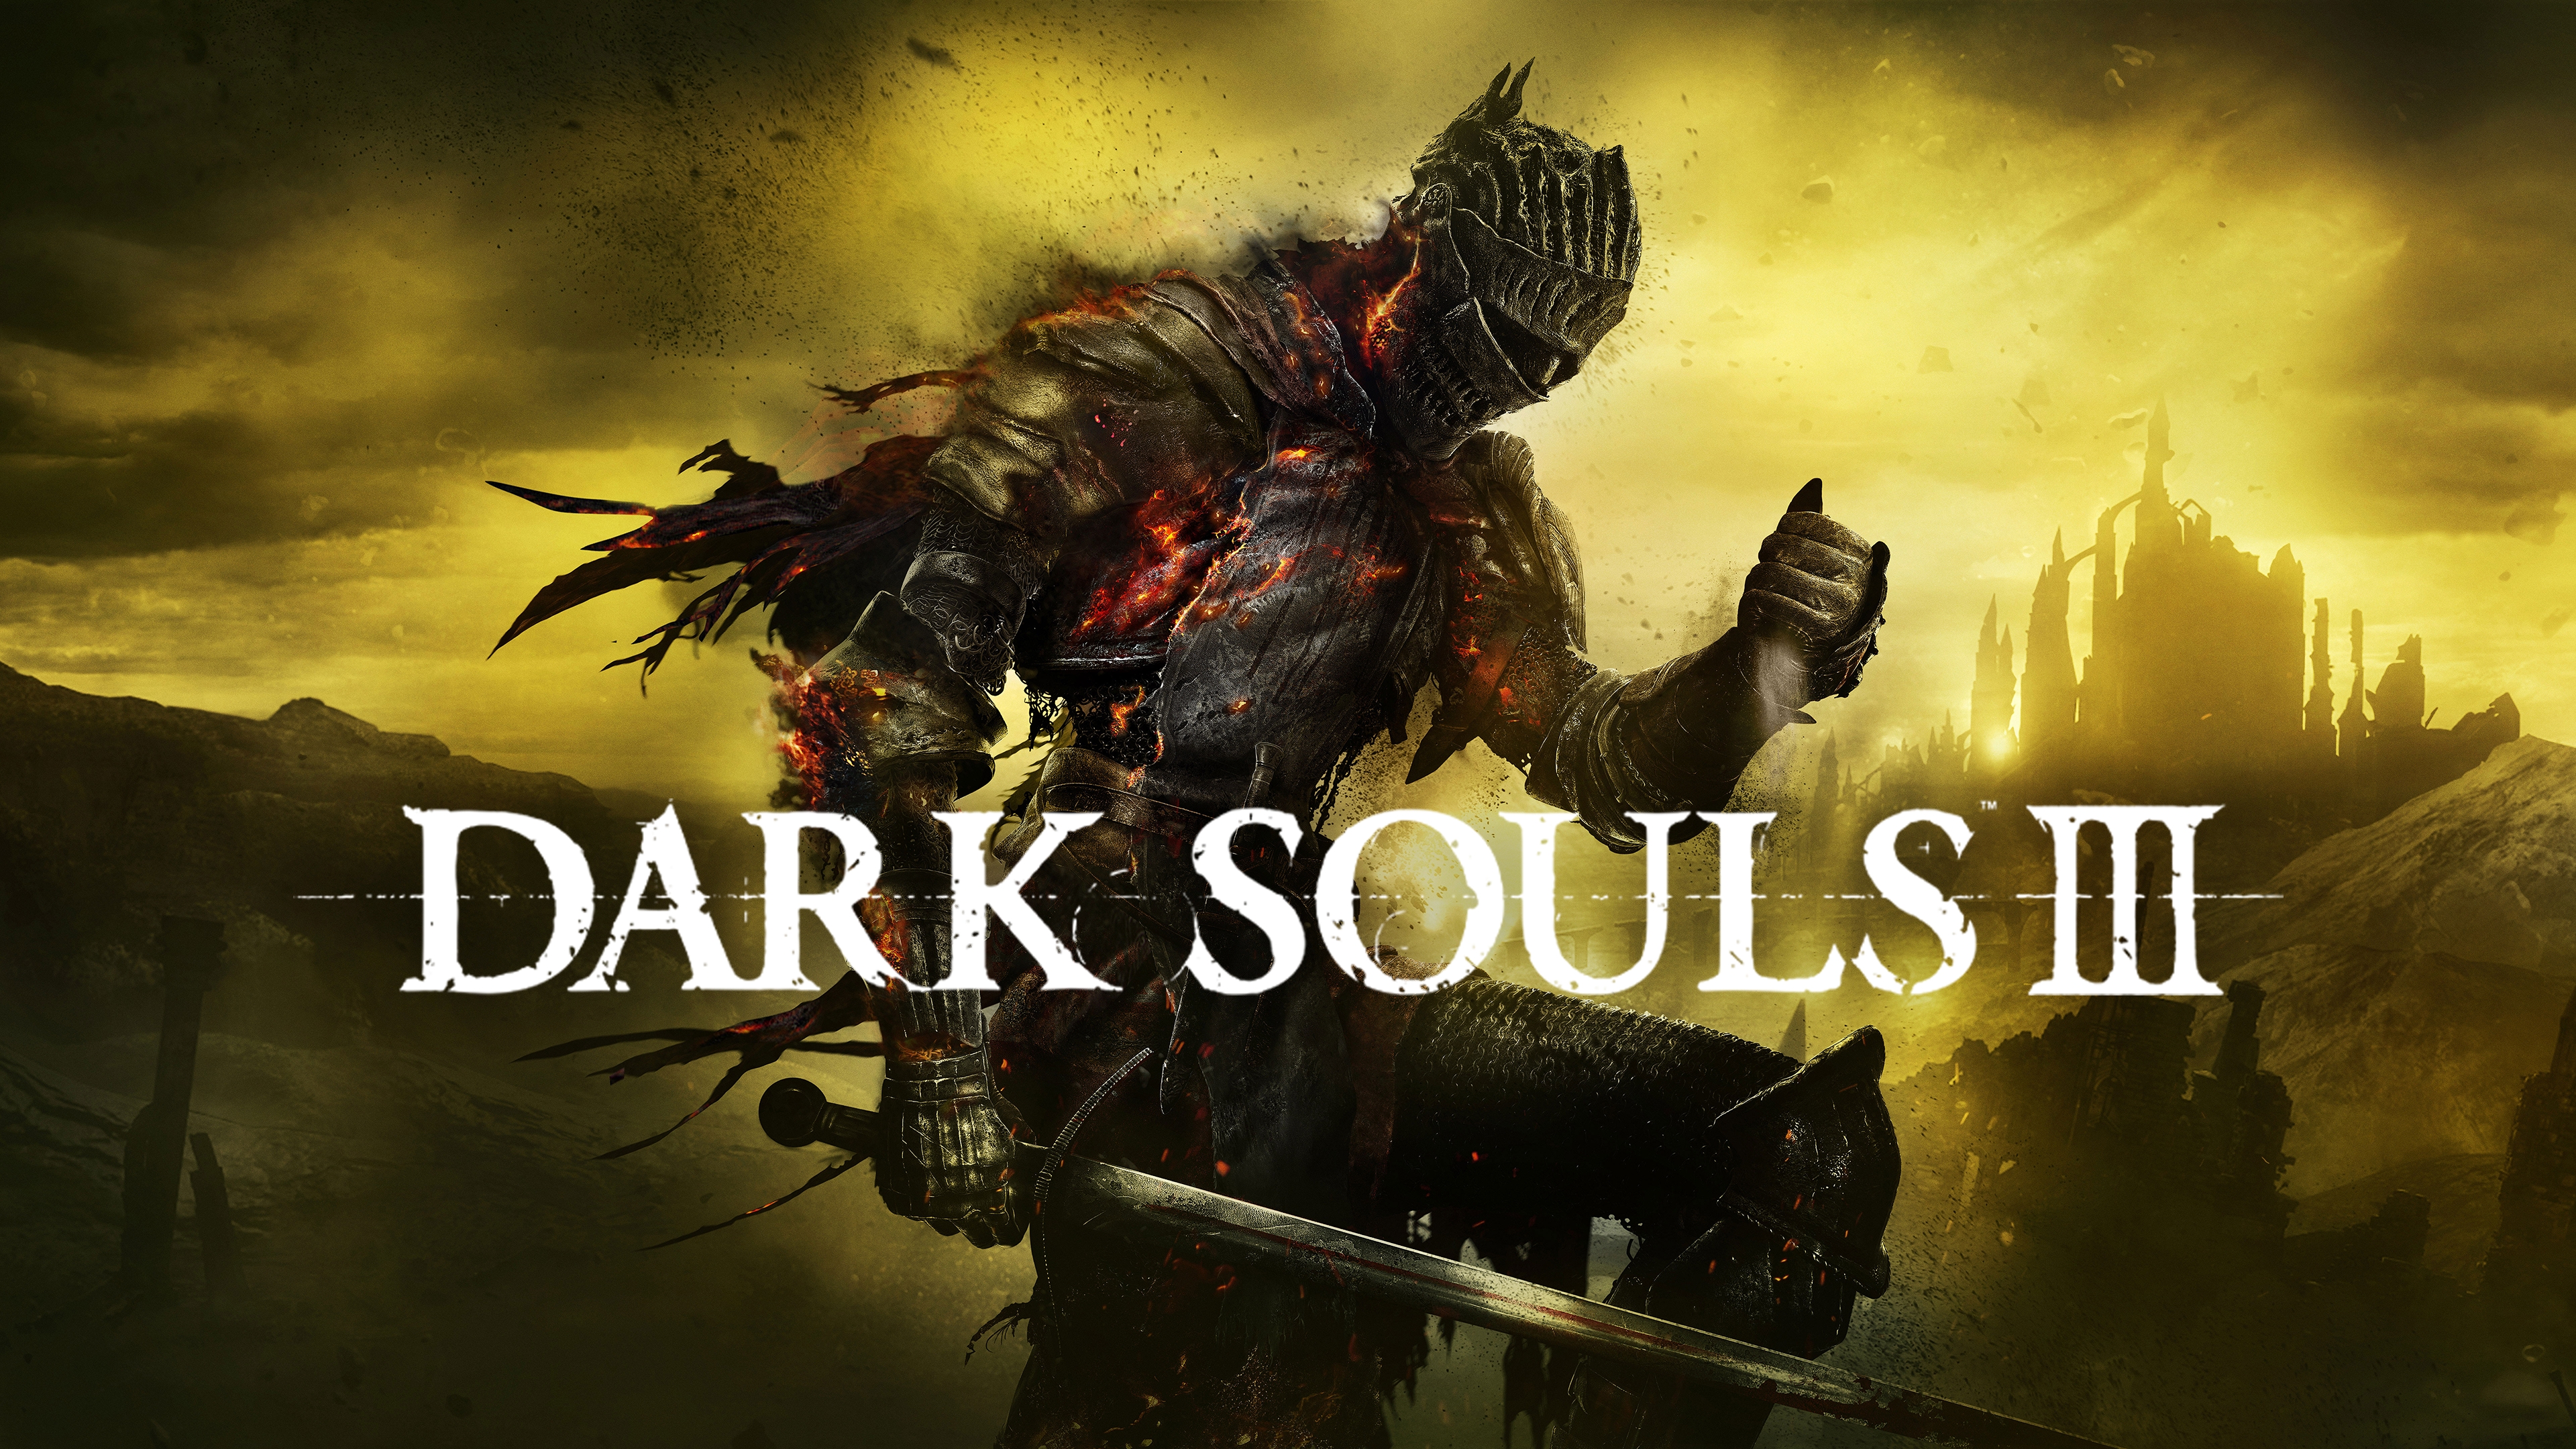 ps3 dark souls 3 free download